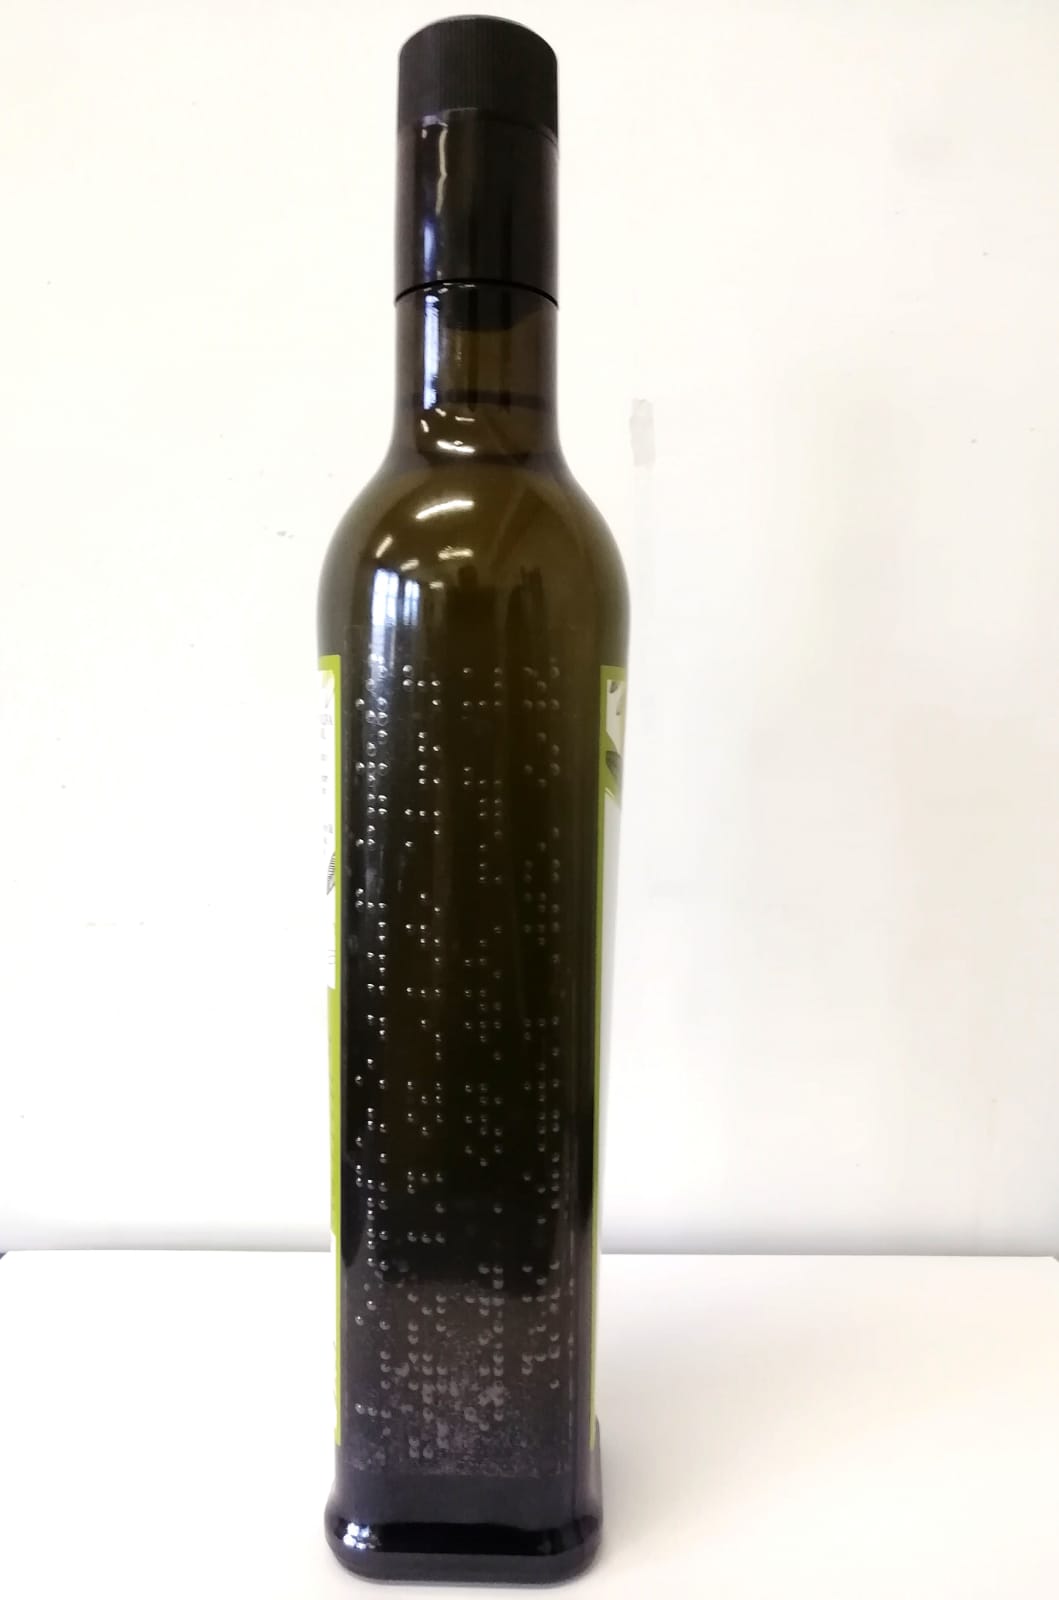 Etichetta accessibile dell’olio d’oliva anche per chi non vede